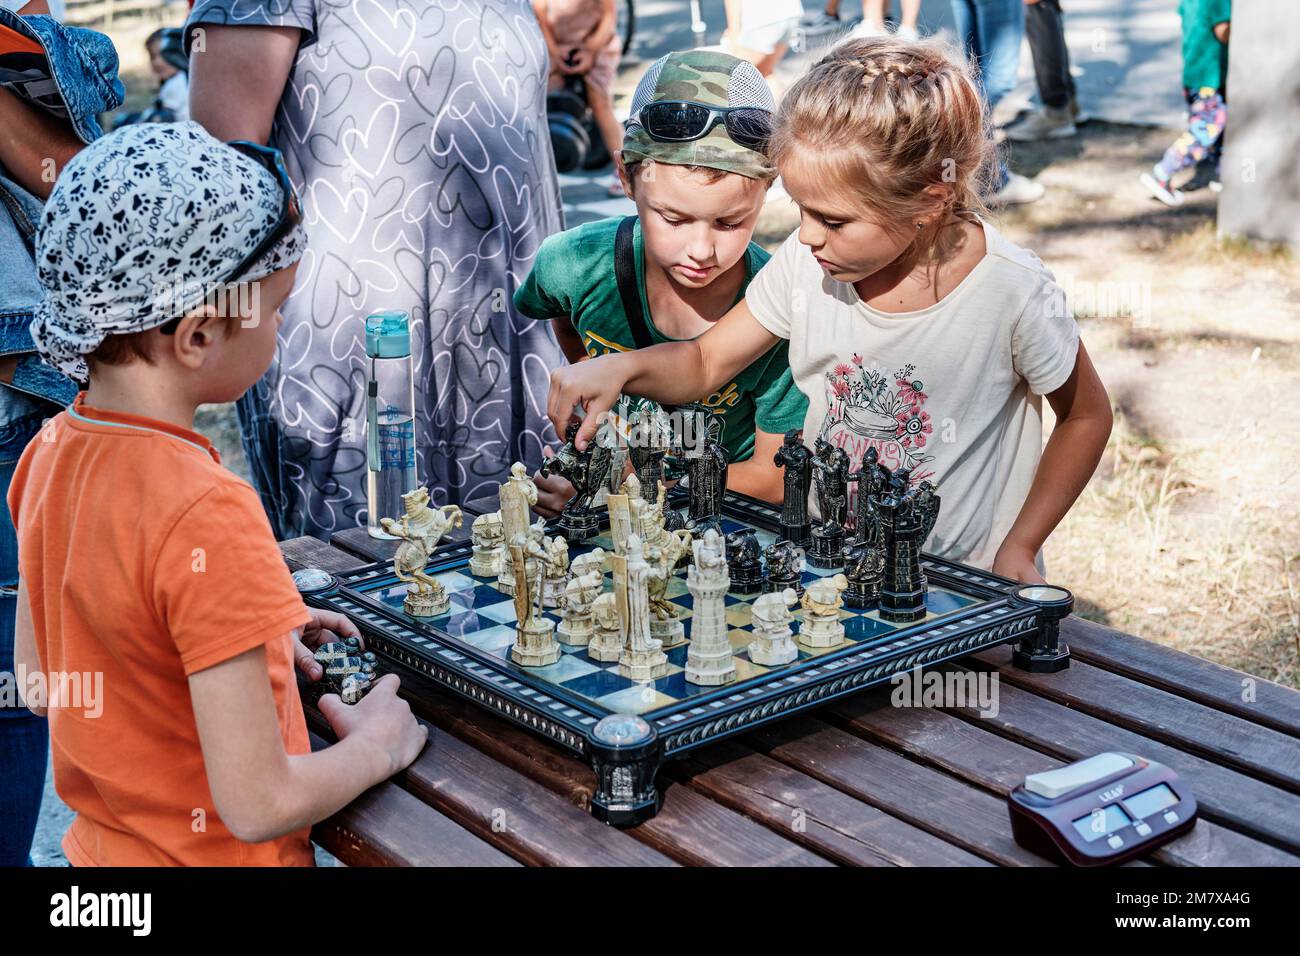 Ekaterinbourg, Russie - 28 août 2022: Les enfants jouant aux échecs avec des figures sous forme de personnages du film Harry Potter. Petite fille faisant jouer les échecs Banque D'Images